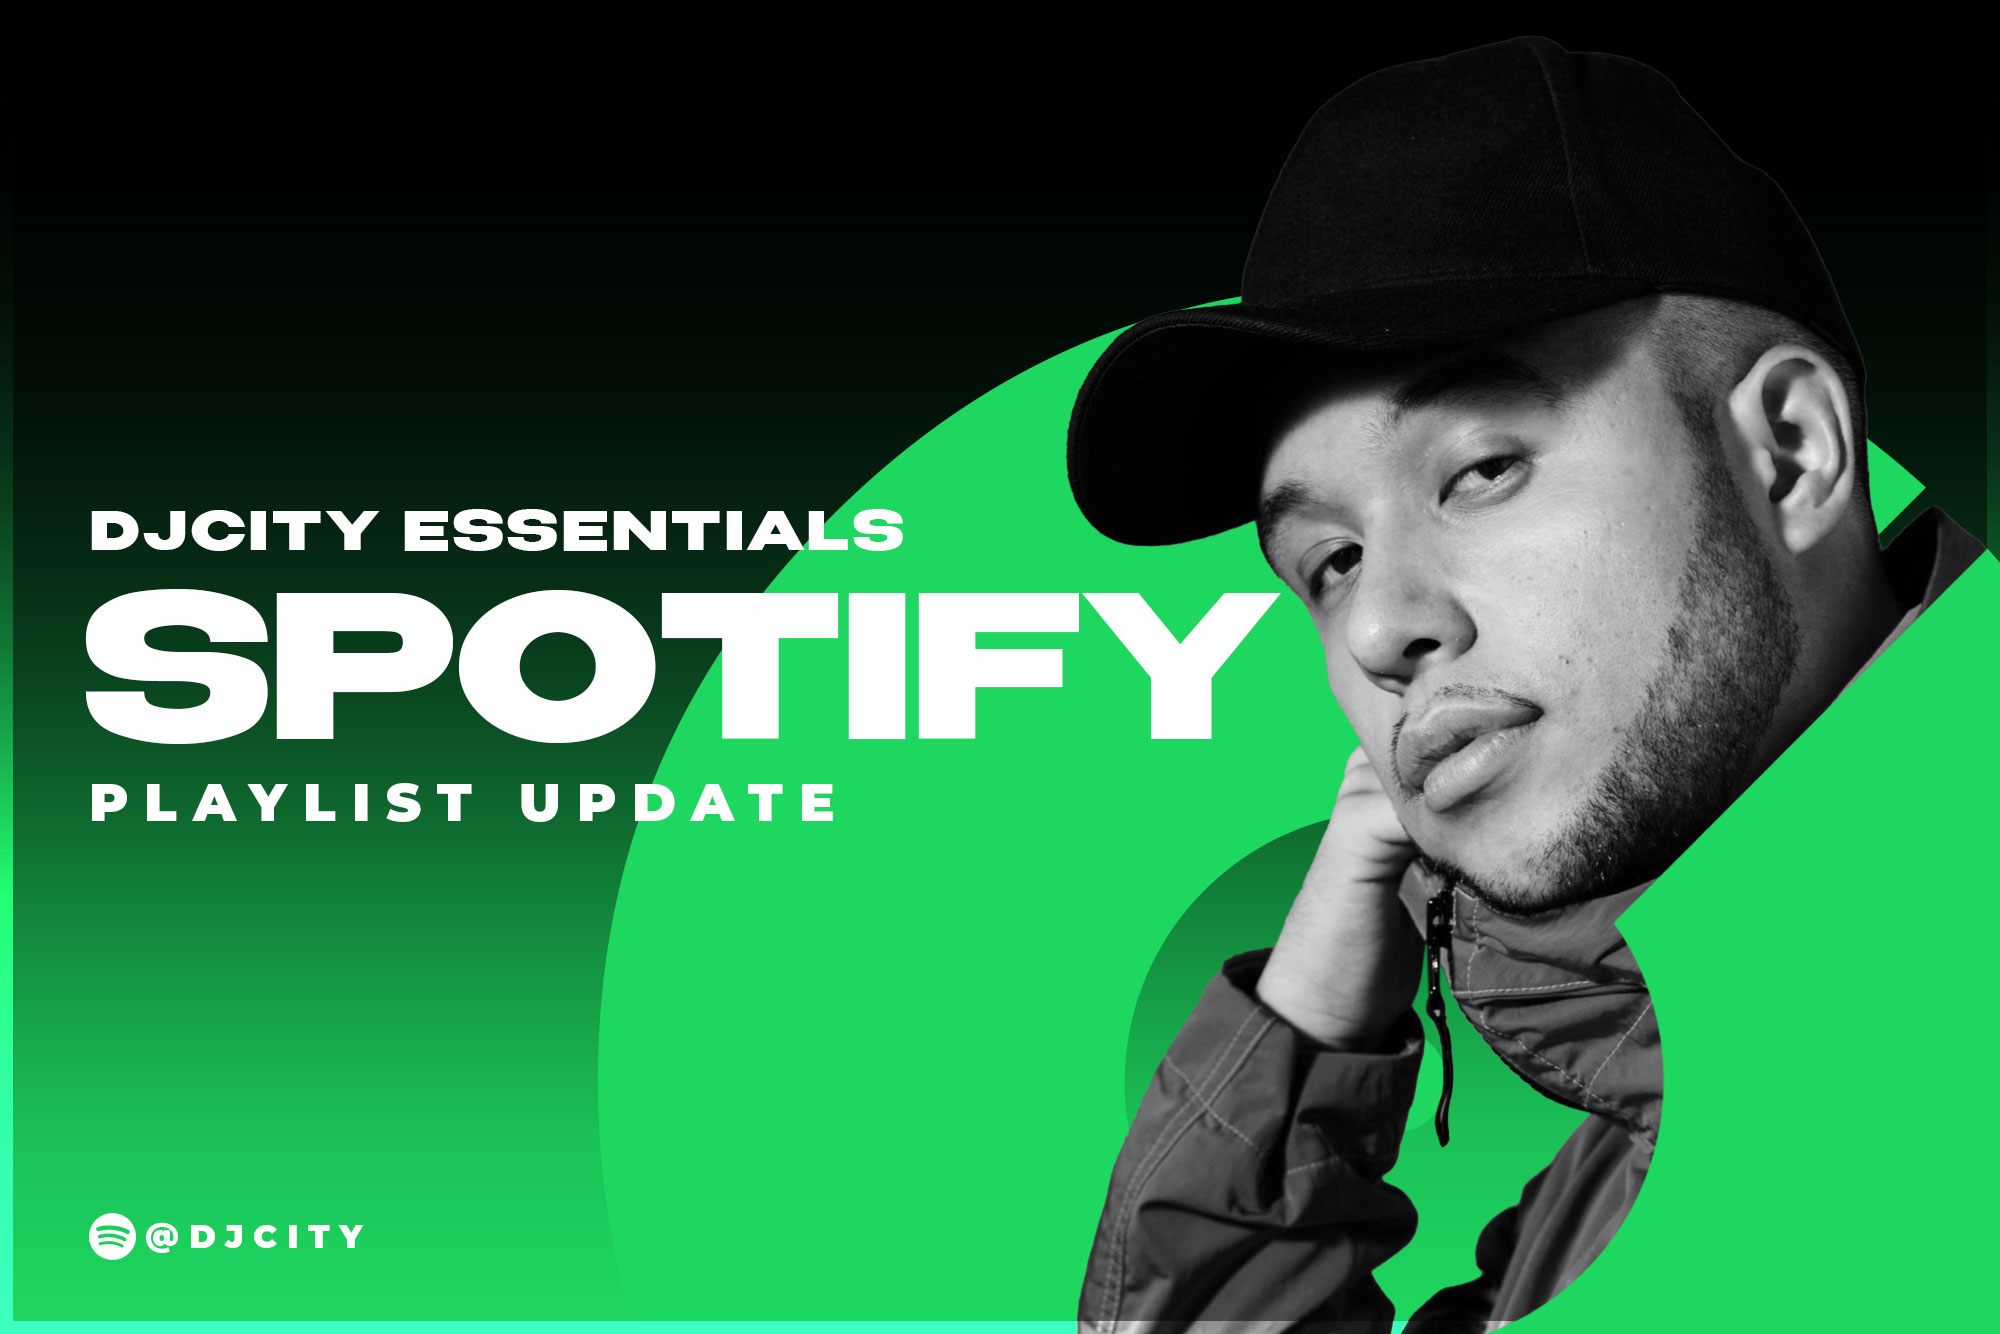 DJcity’s Spotify Playlist Update: Dec. 22